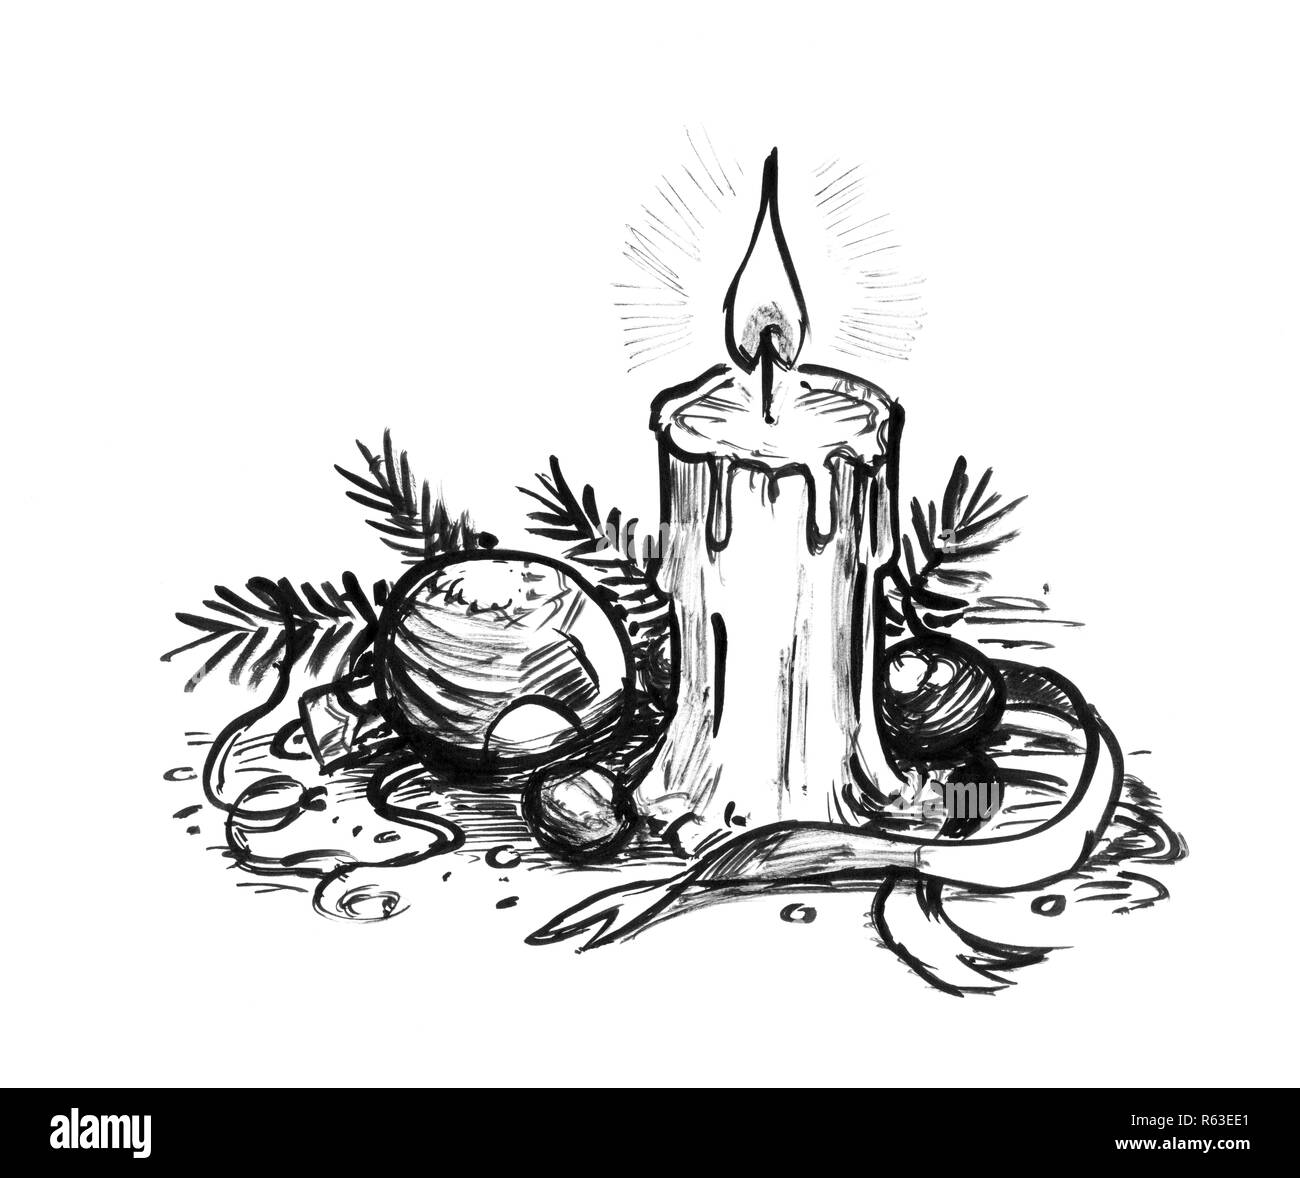 Inchiostro nero disegno a mano della candela che brucia e le decorazioni di Natale Foto Stock